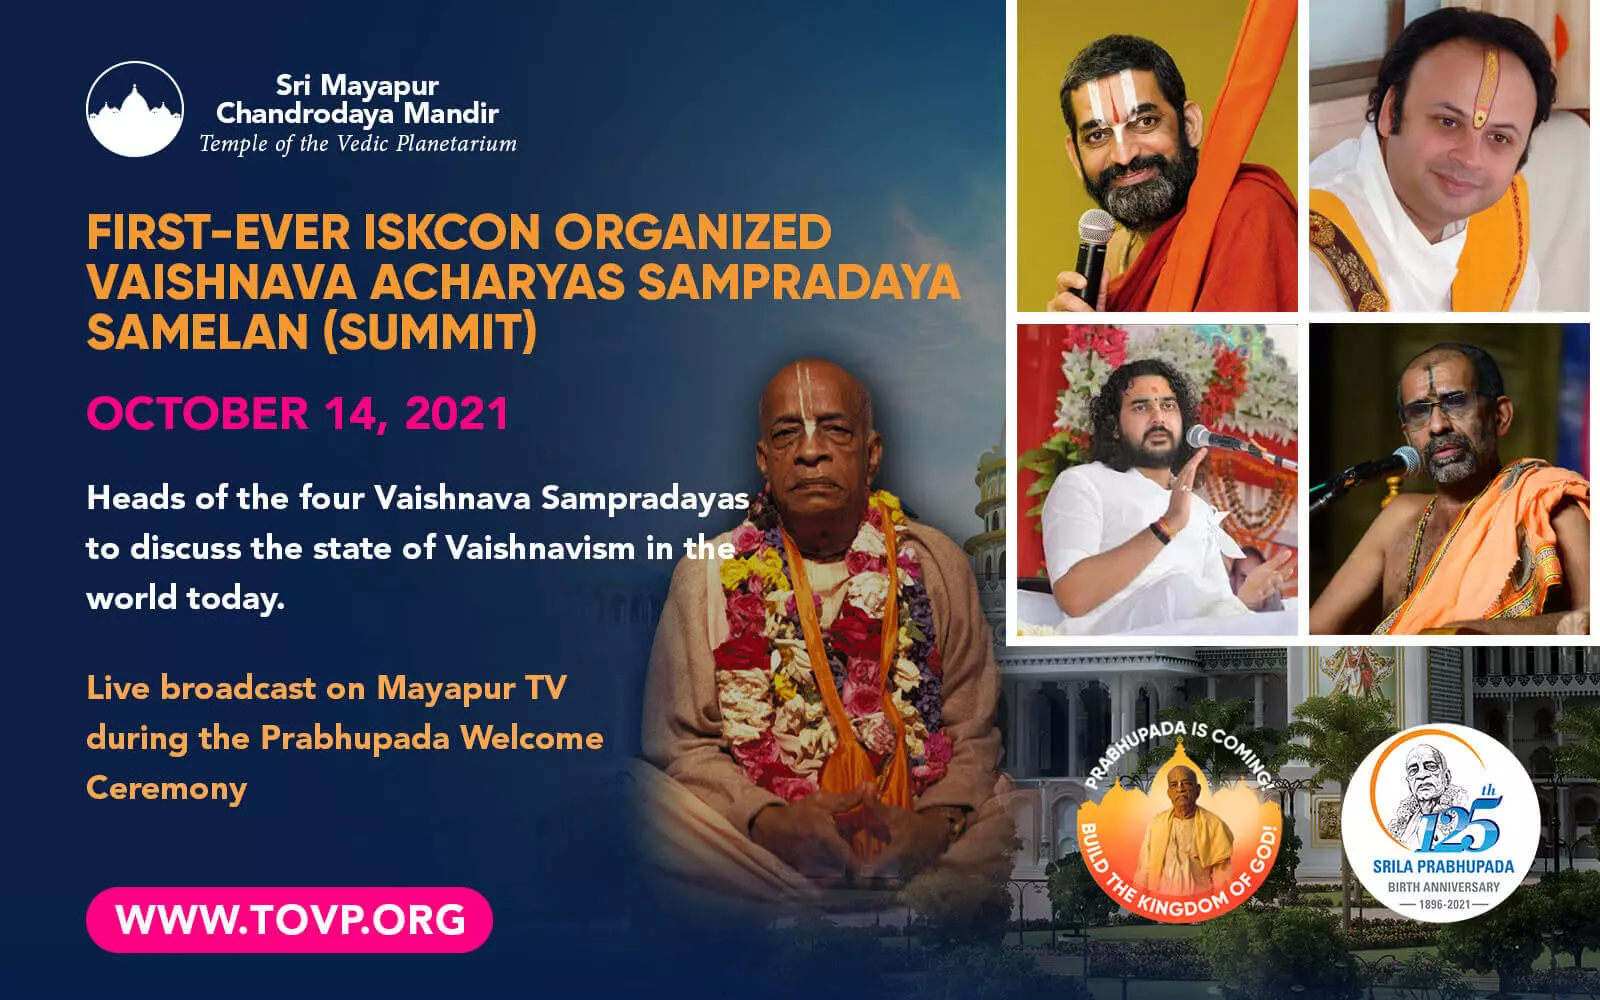 نظمت ISKCON لأول مرة Vaishnava Acharyas Sampradaya Samelan (القمة) - 14 أكتوبر 2021